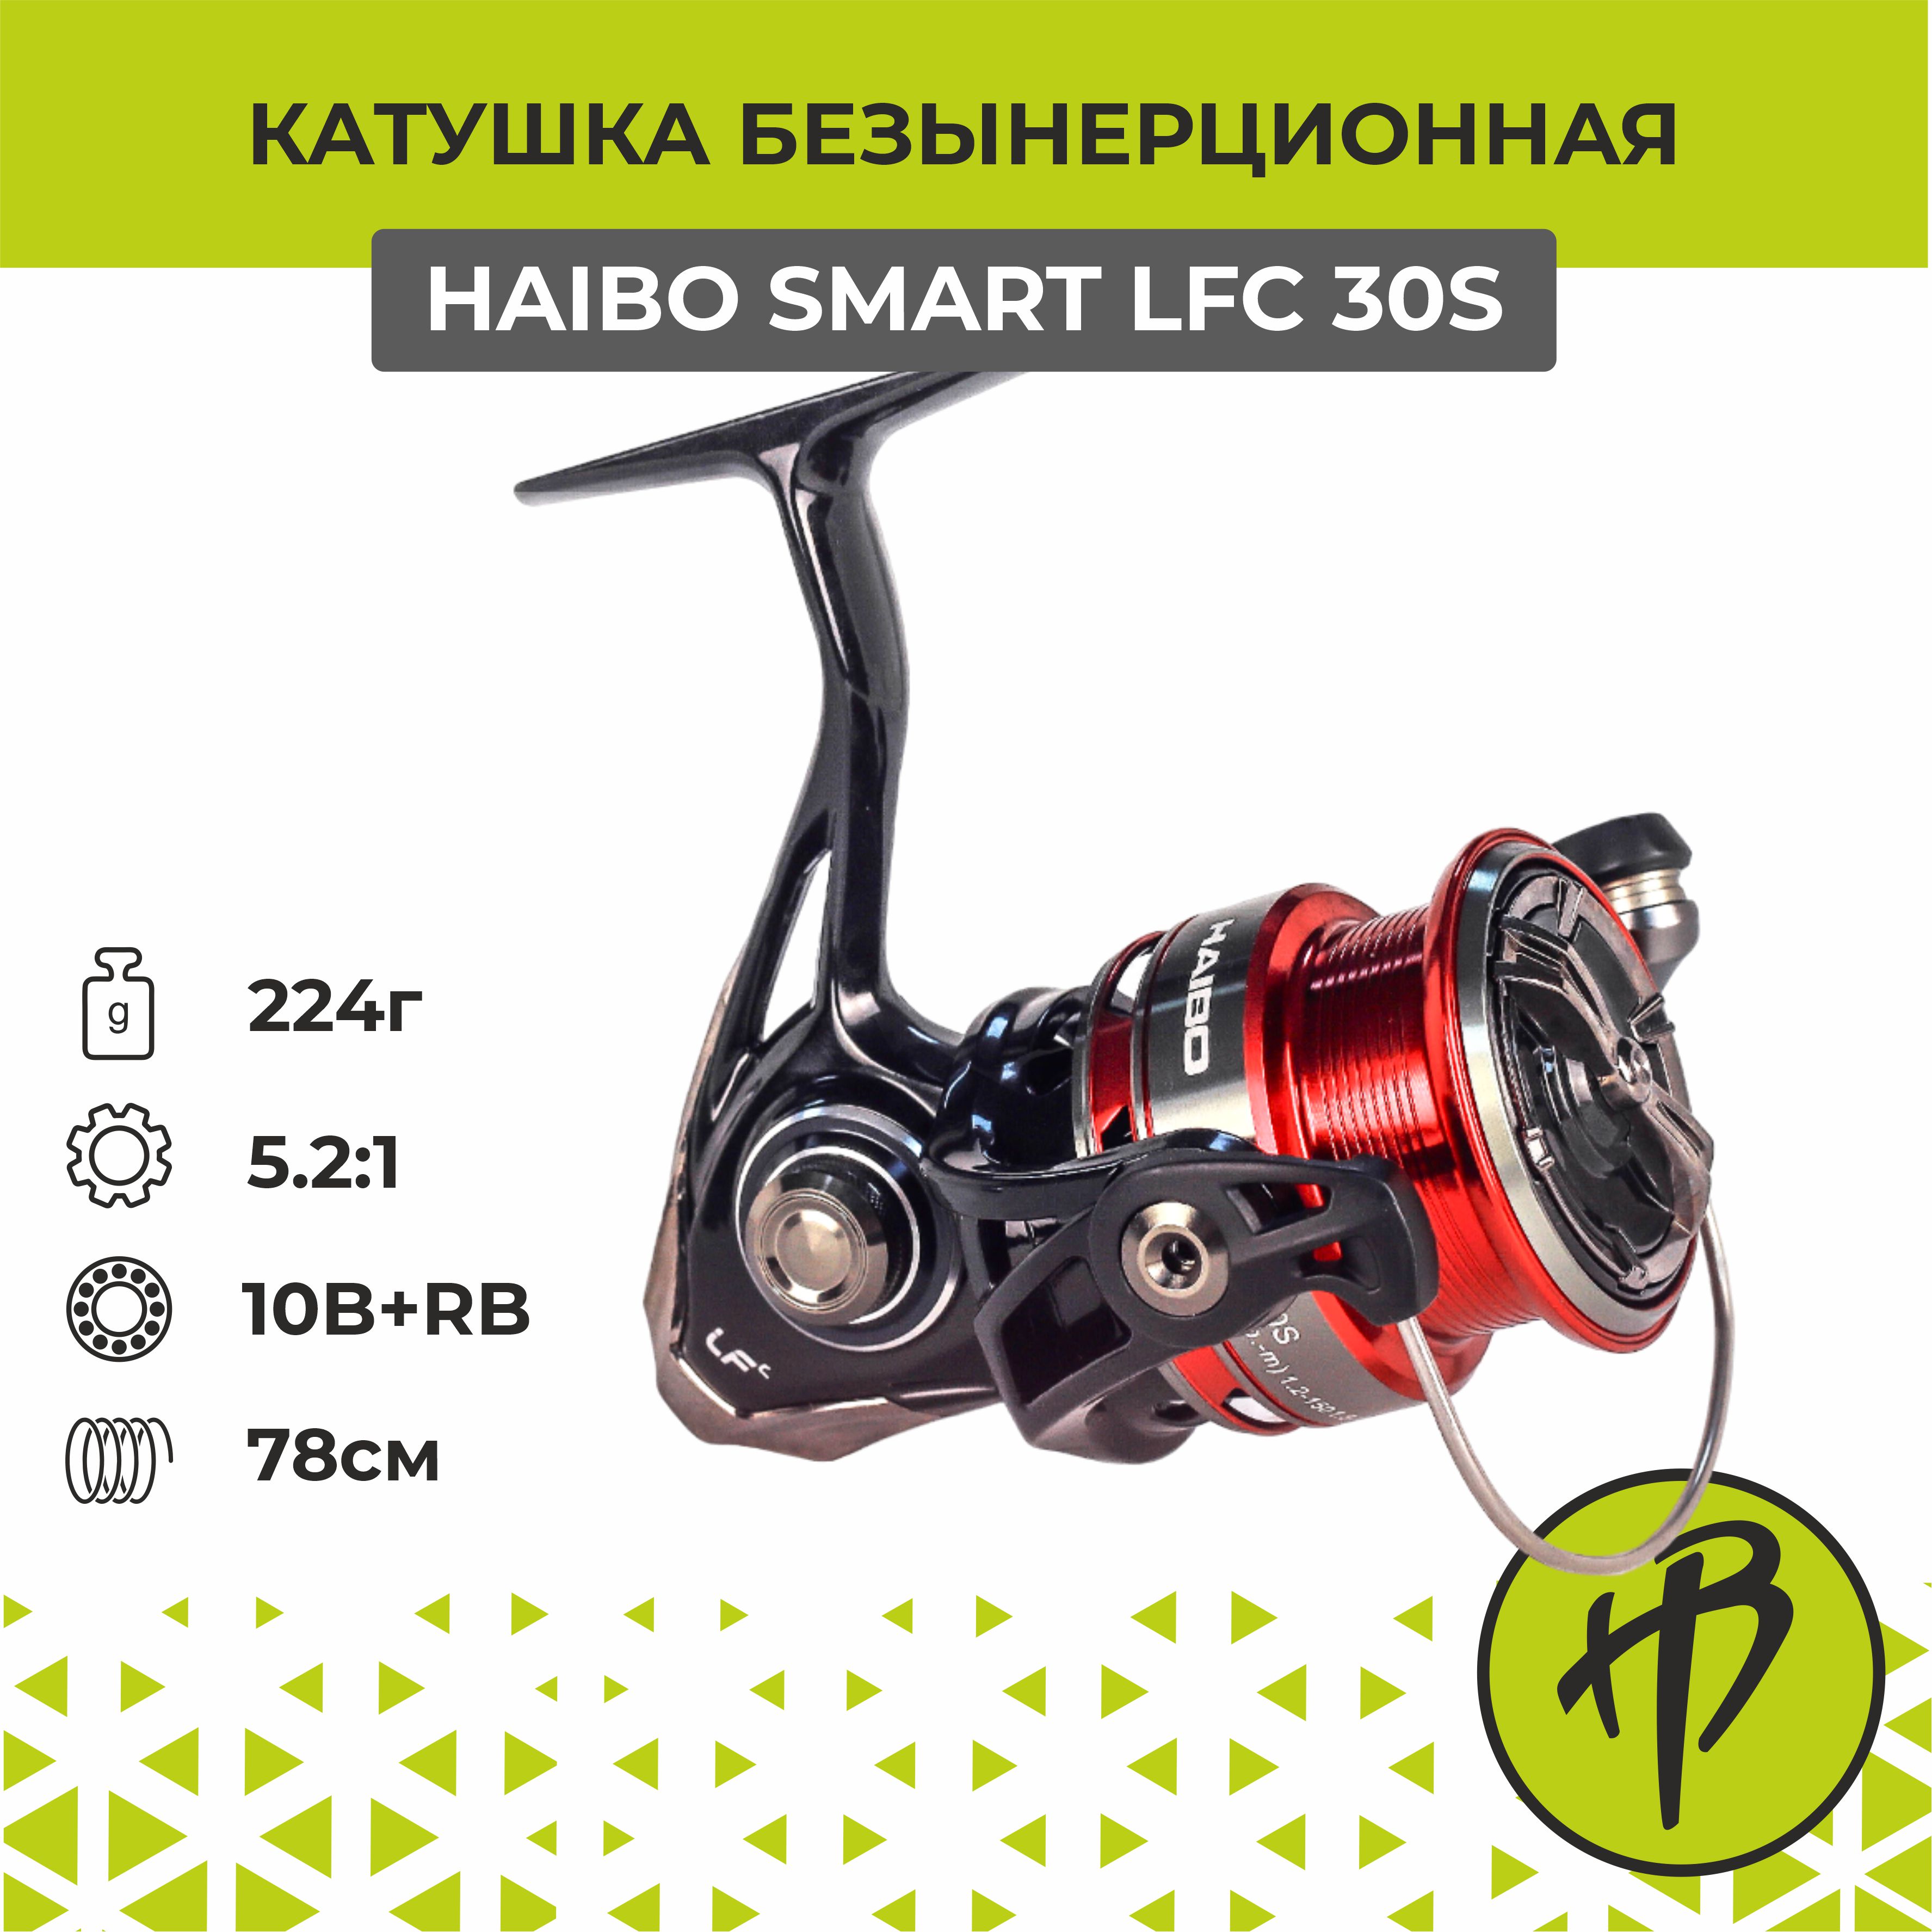 Катушка для спиннинга безынерционная Haibo Smart LFC 30S, правая/левая рука